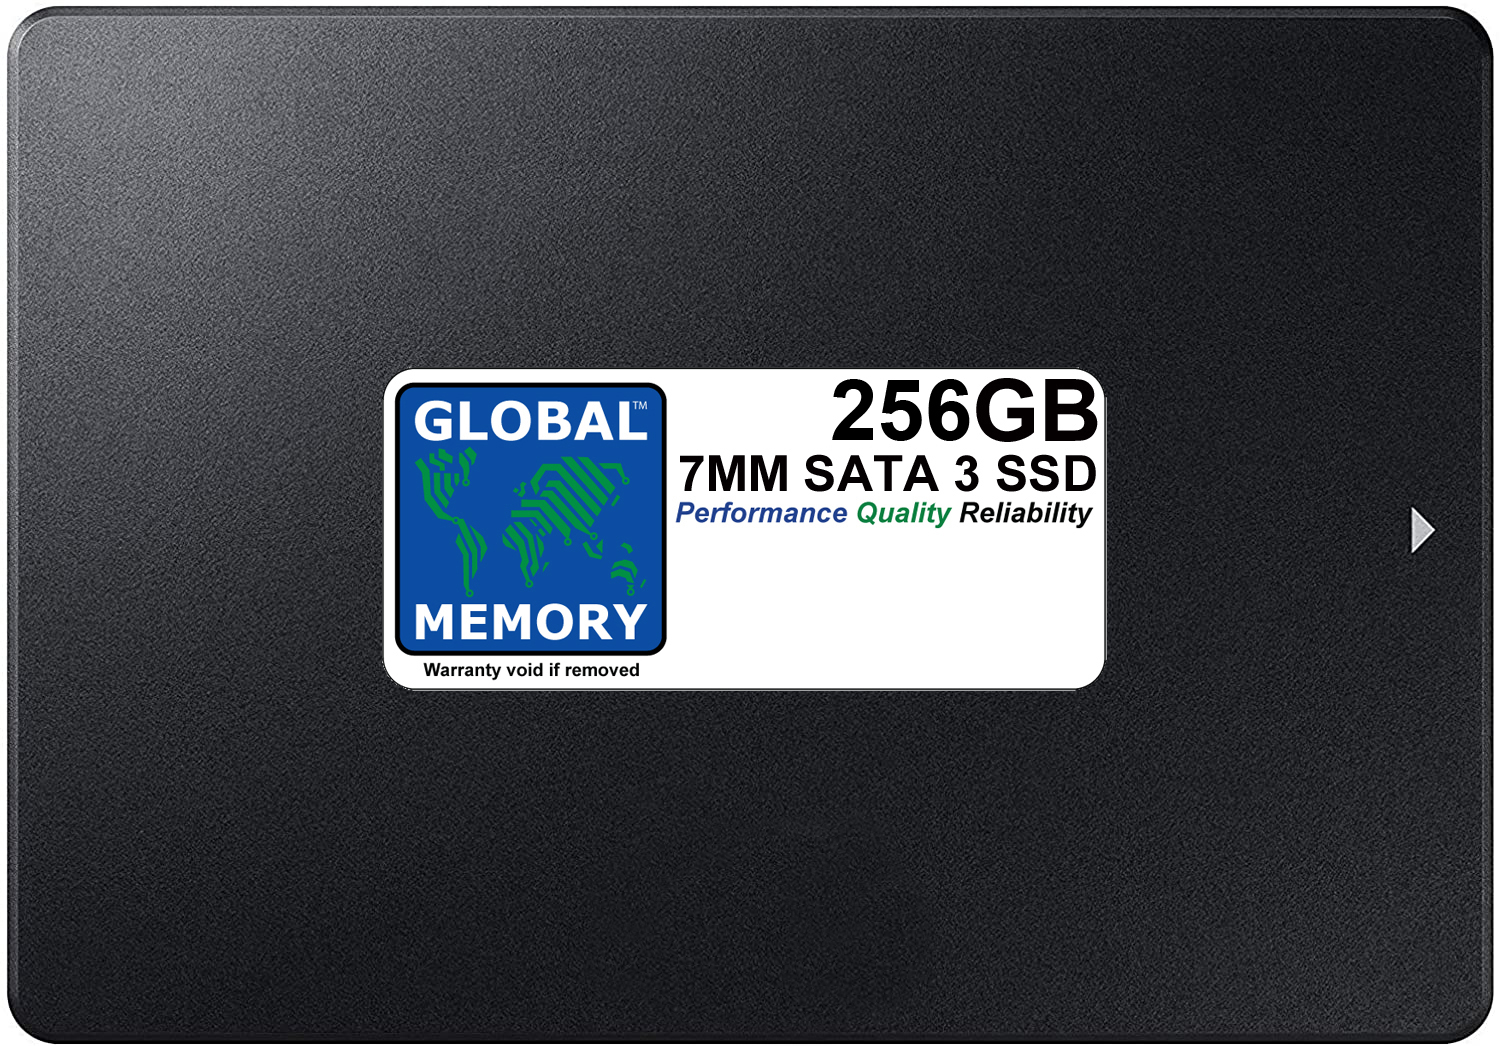 256GB 7mm 2.5" SATA 3 SSD FOR MAC MINI (2011 - 2012 - 2014)